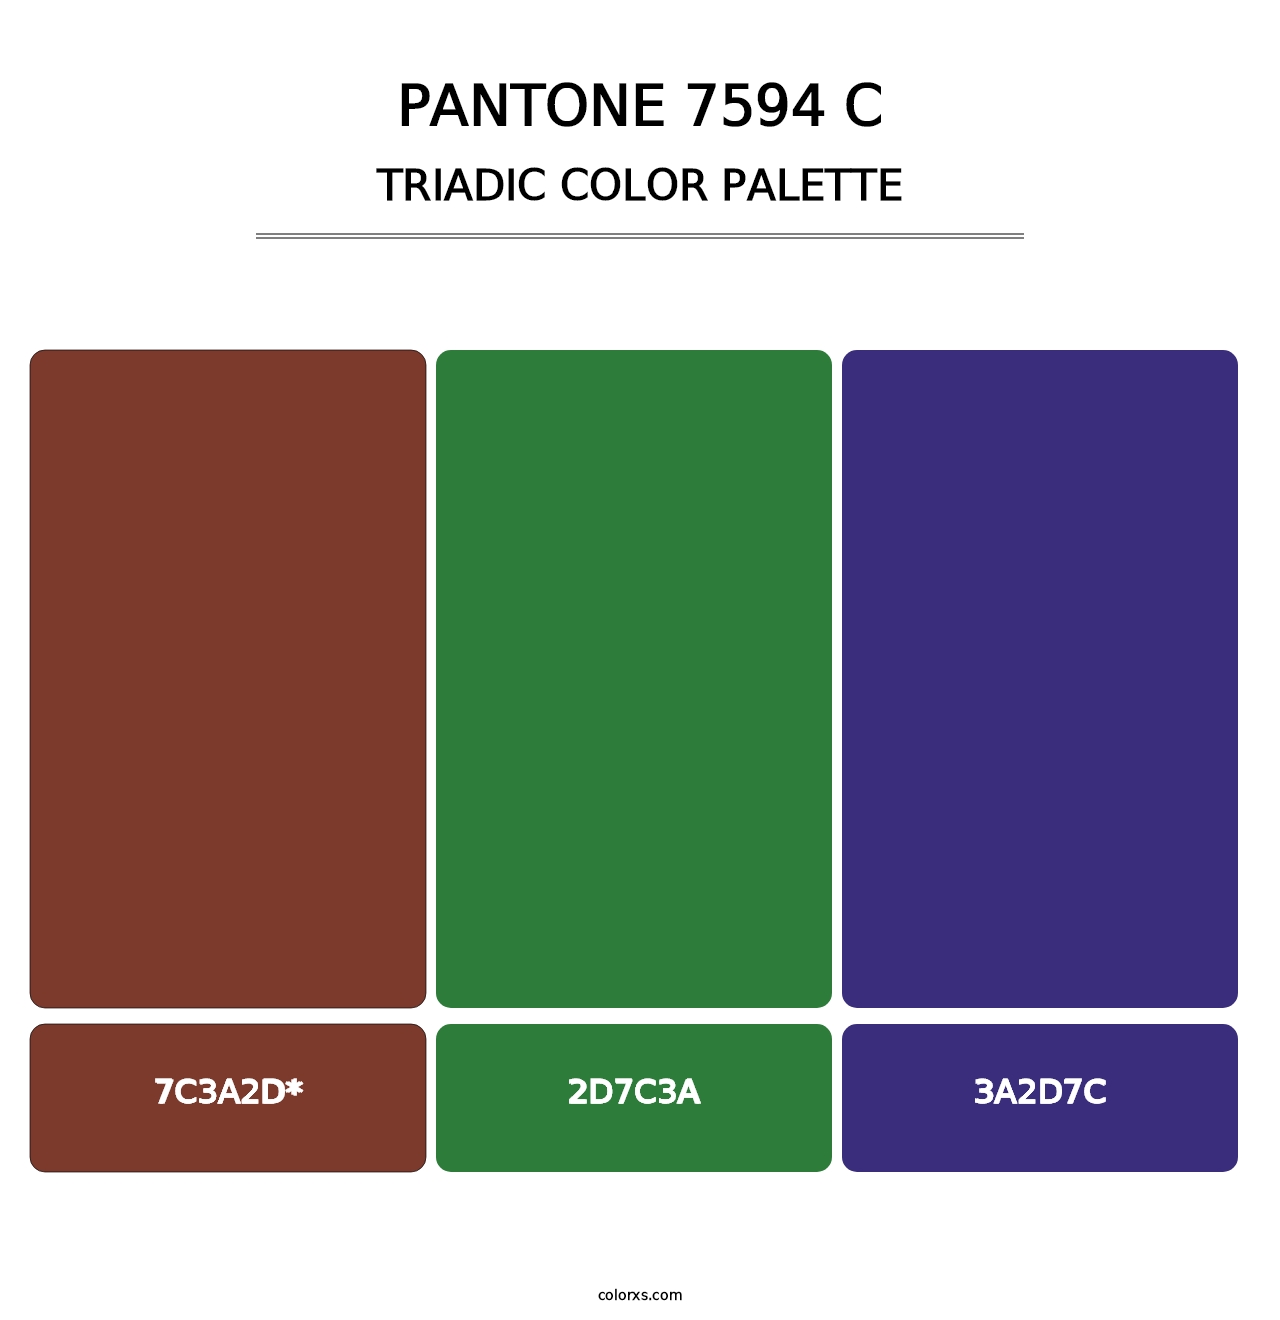 PANTONE 7594 C - Triadic Color Palette